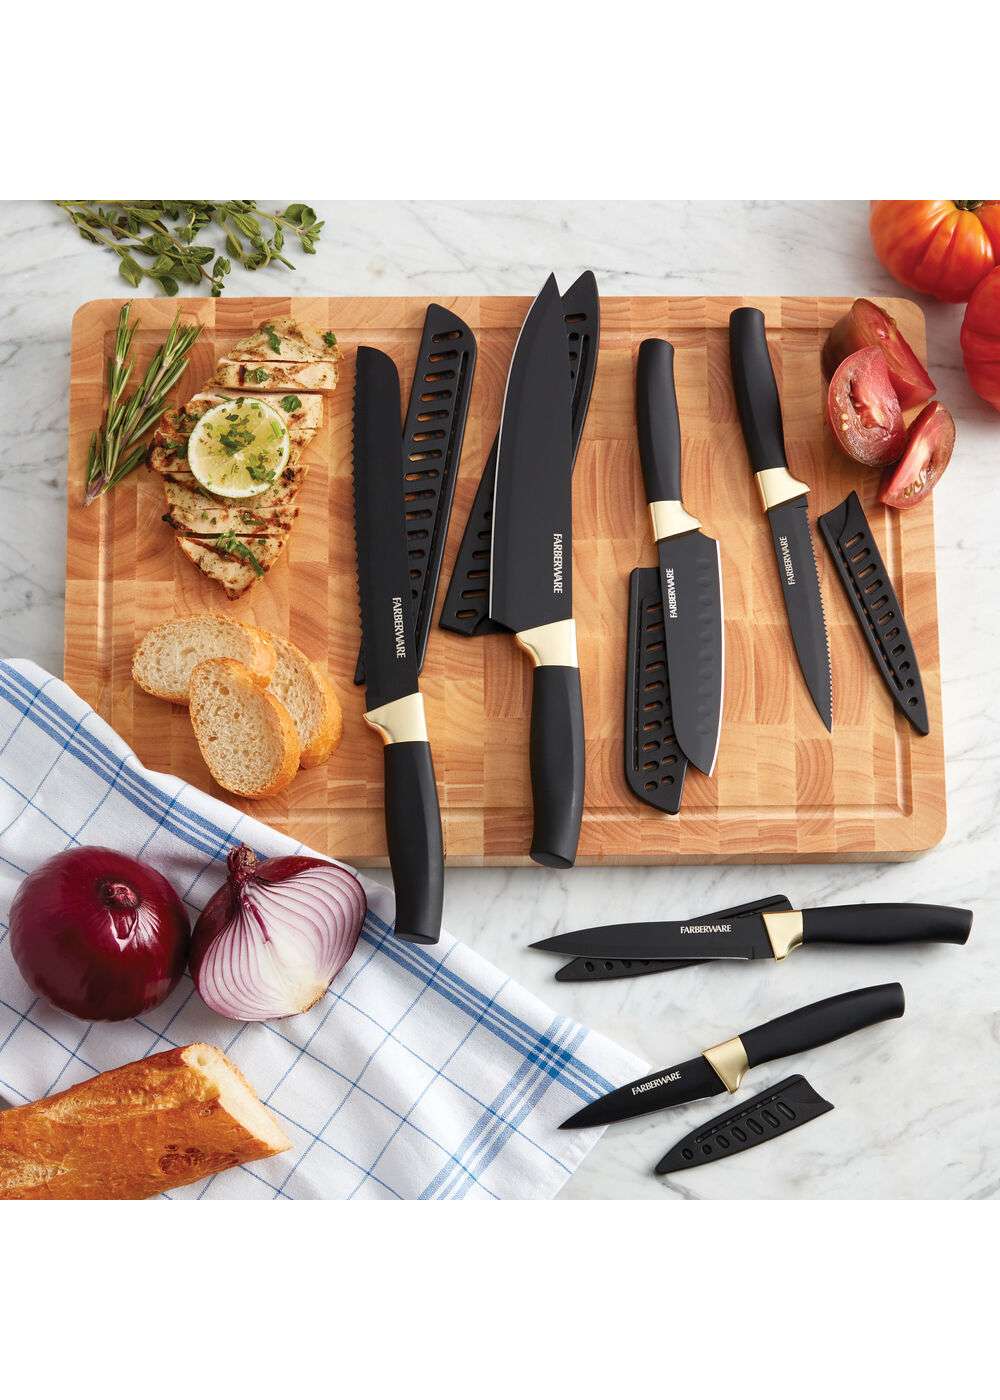 Farberware Edgekeeper 8 Chef Knife with Sleeve (Black)